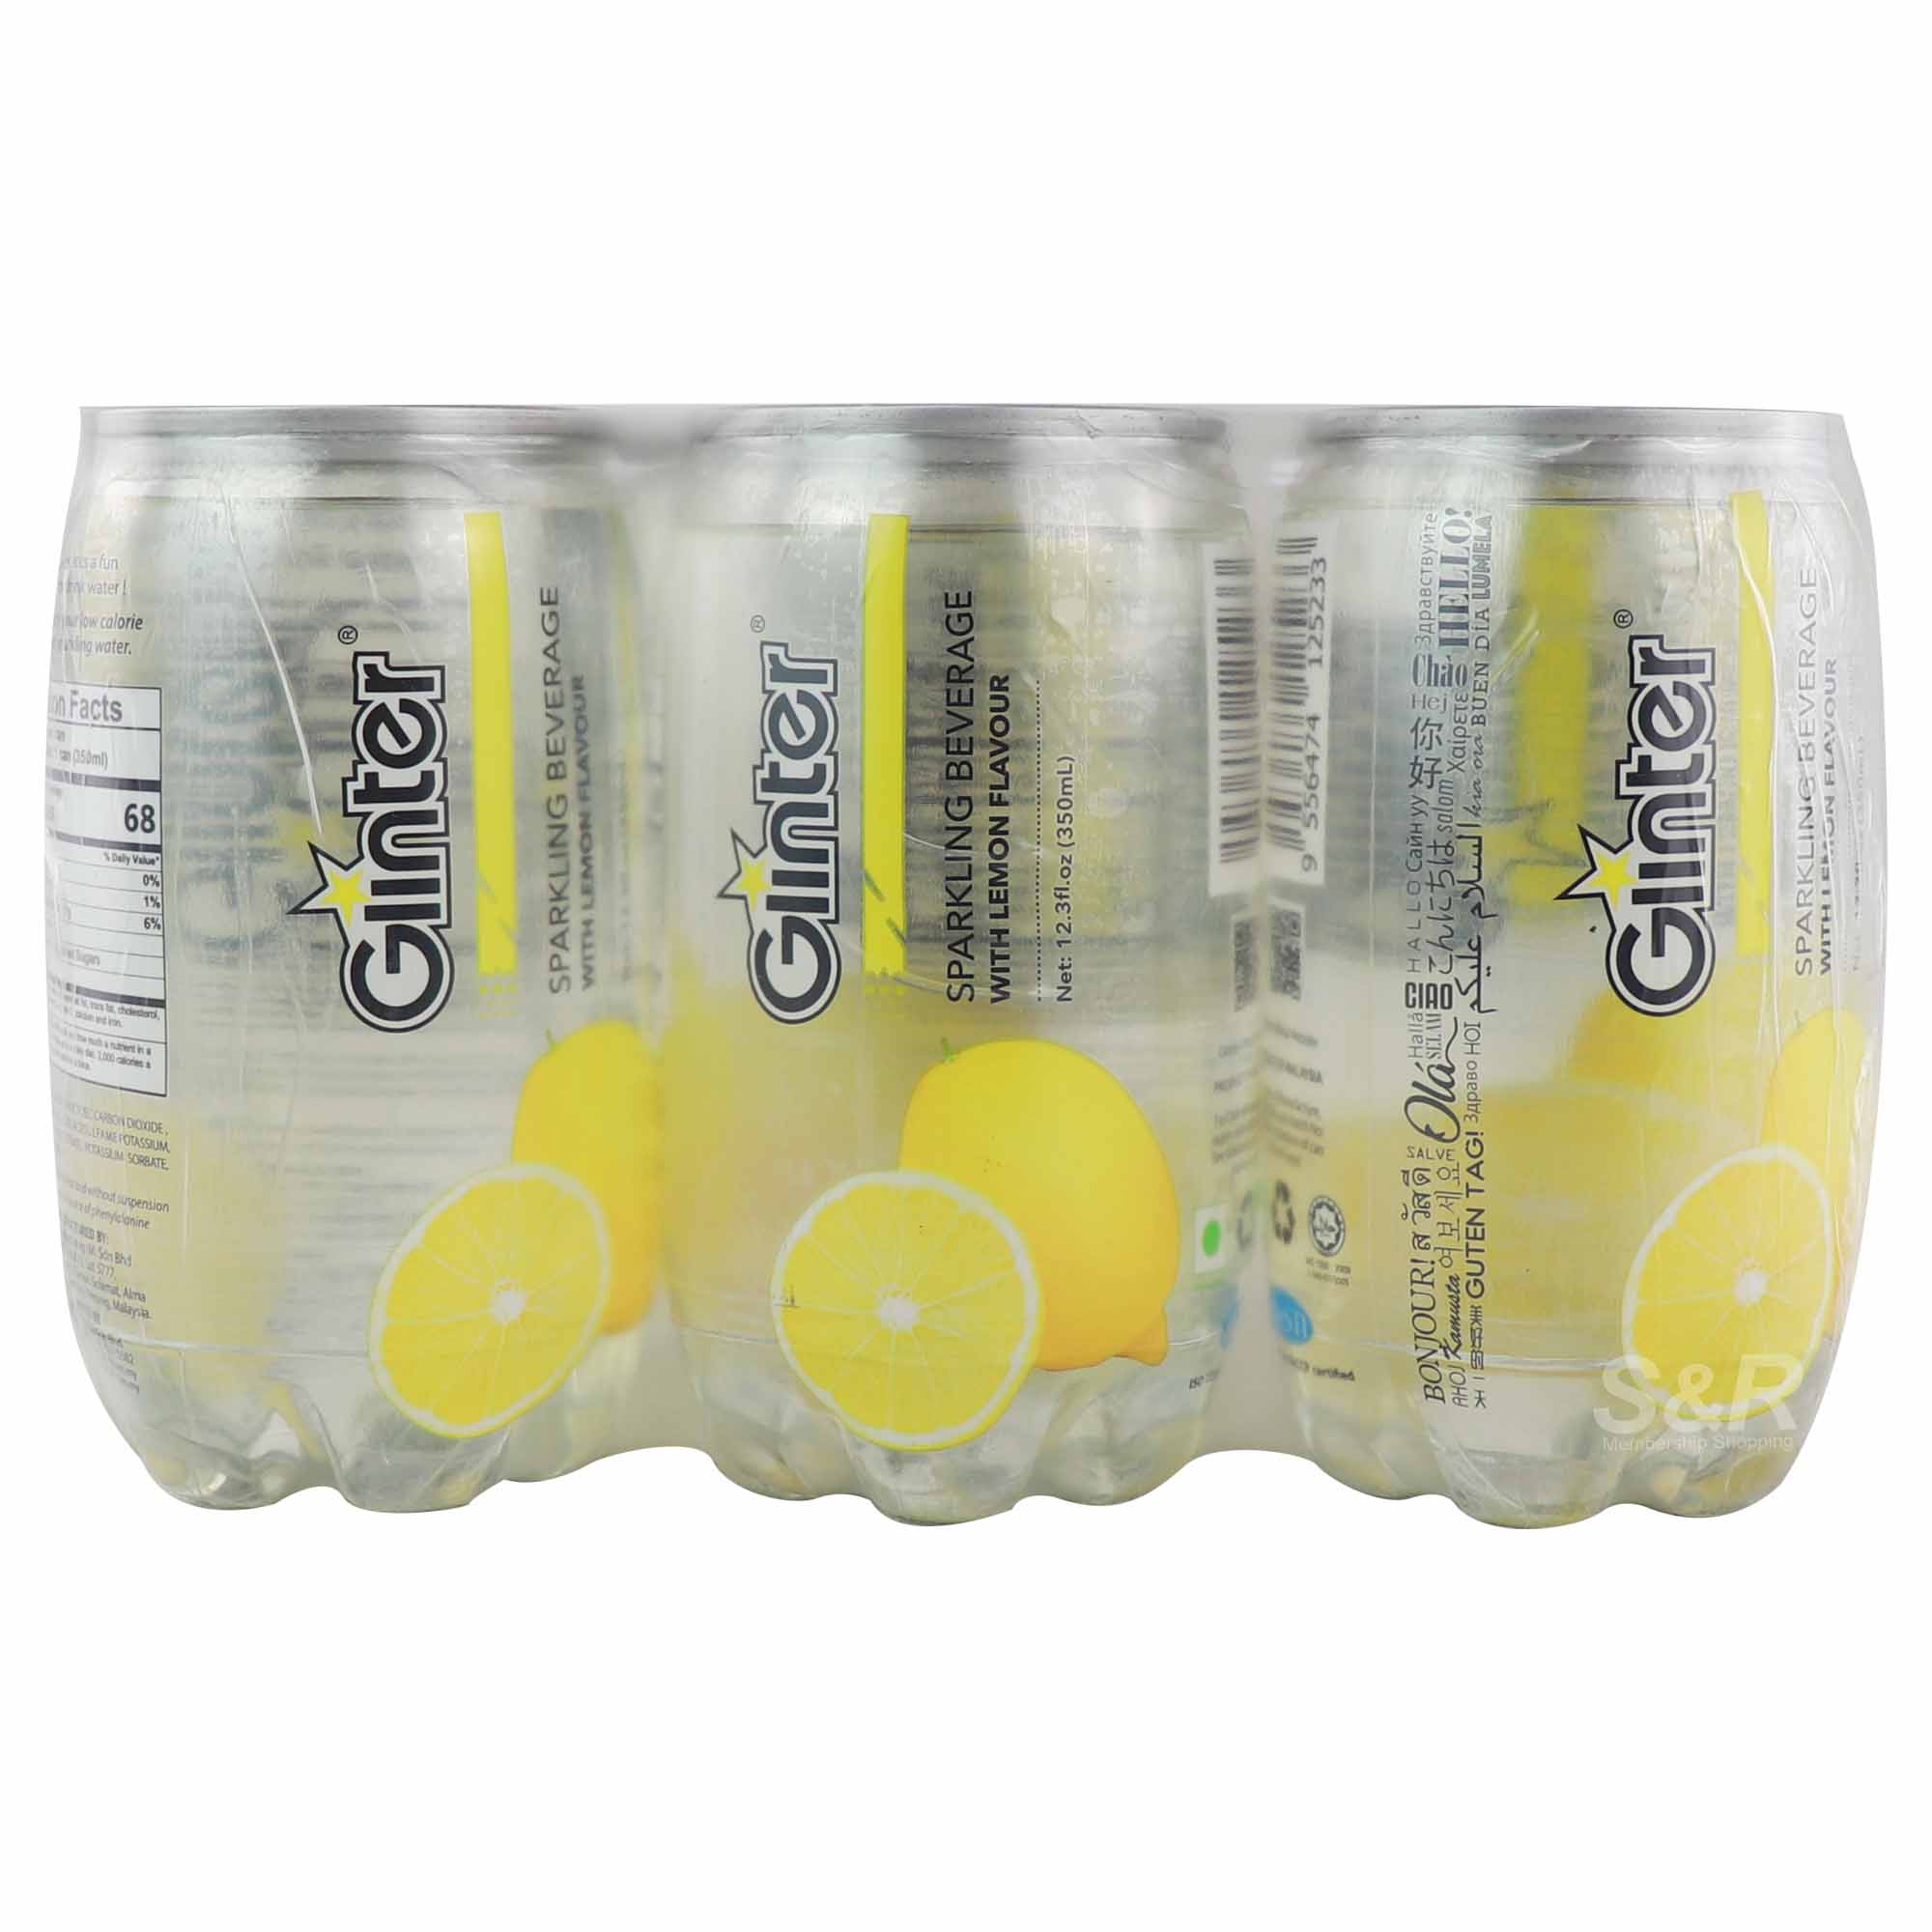 Glinter Sparkling Beverage with Lemon Flavor 6 cans